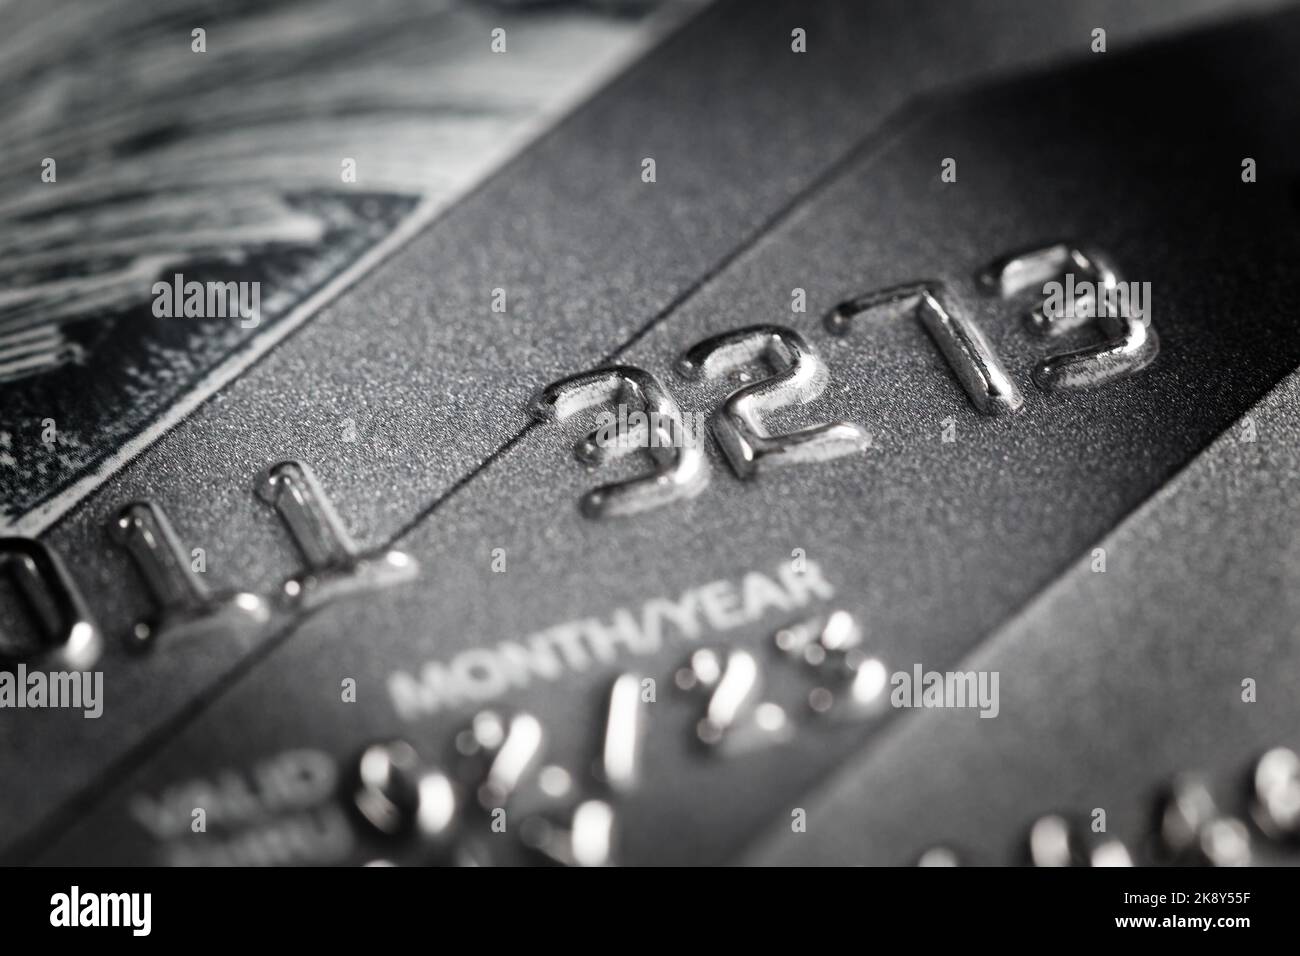 Fragment d'une carte bancaire avec des chiffres, avec une faible profondeur de champ. Photographie macro. Banque D'Images